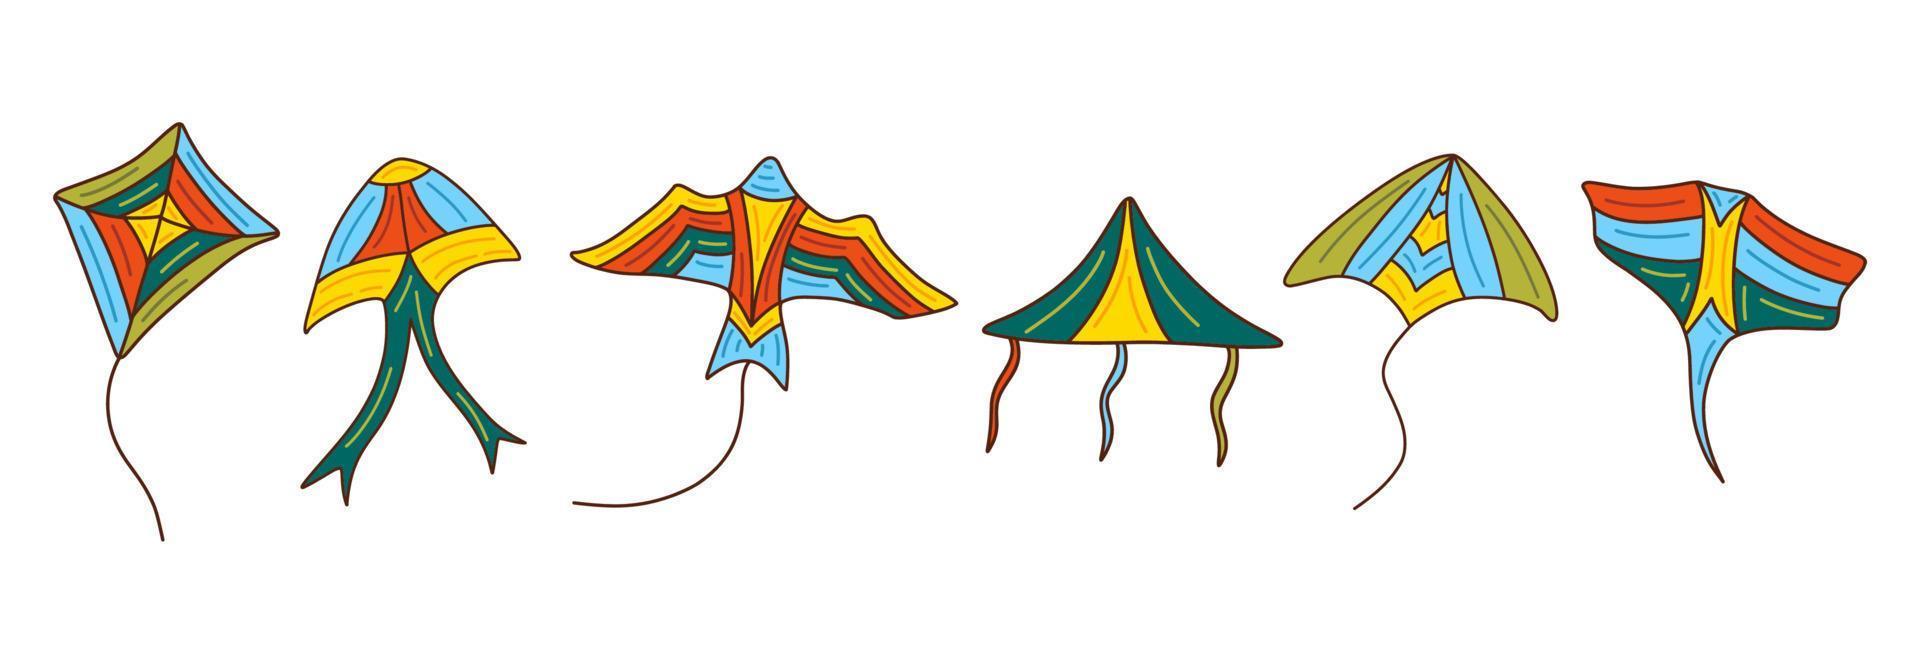 TOGEVAL Triângulo Pipa Brinquedo Externo Brinquedo Voador Brinquedo De  Praia 3D Pipa Brinquedos Ao Ar Livre Pipa Corda Voadora Pipa Para Exterior  Brinquedo Colorido Pipa Borboletas : : Brinquedos e Jogos